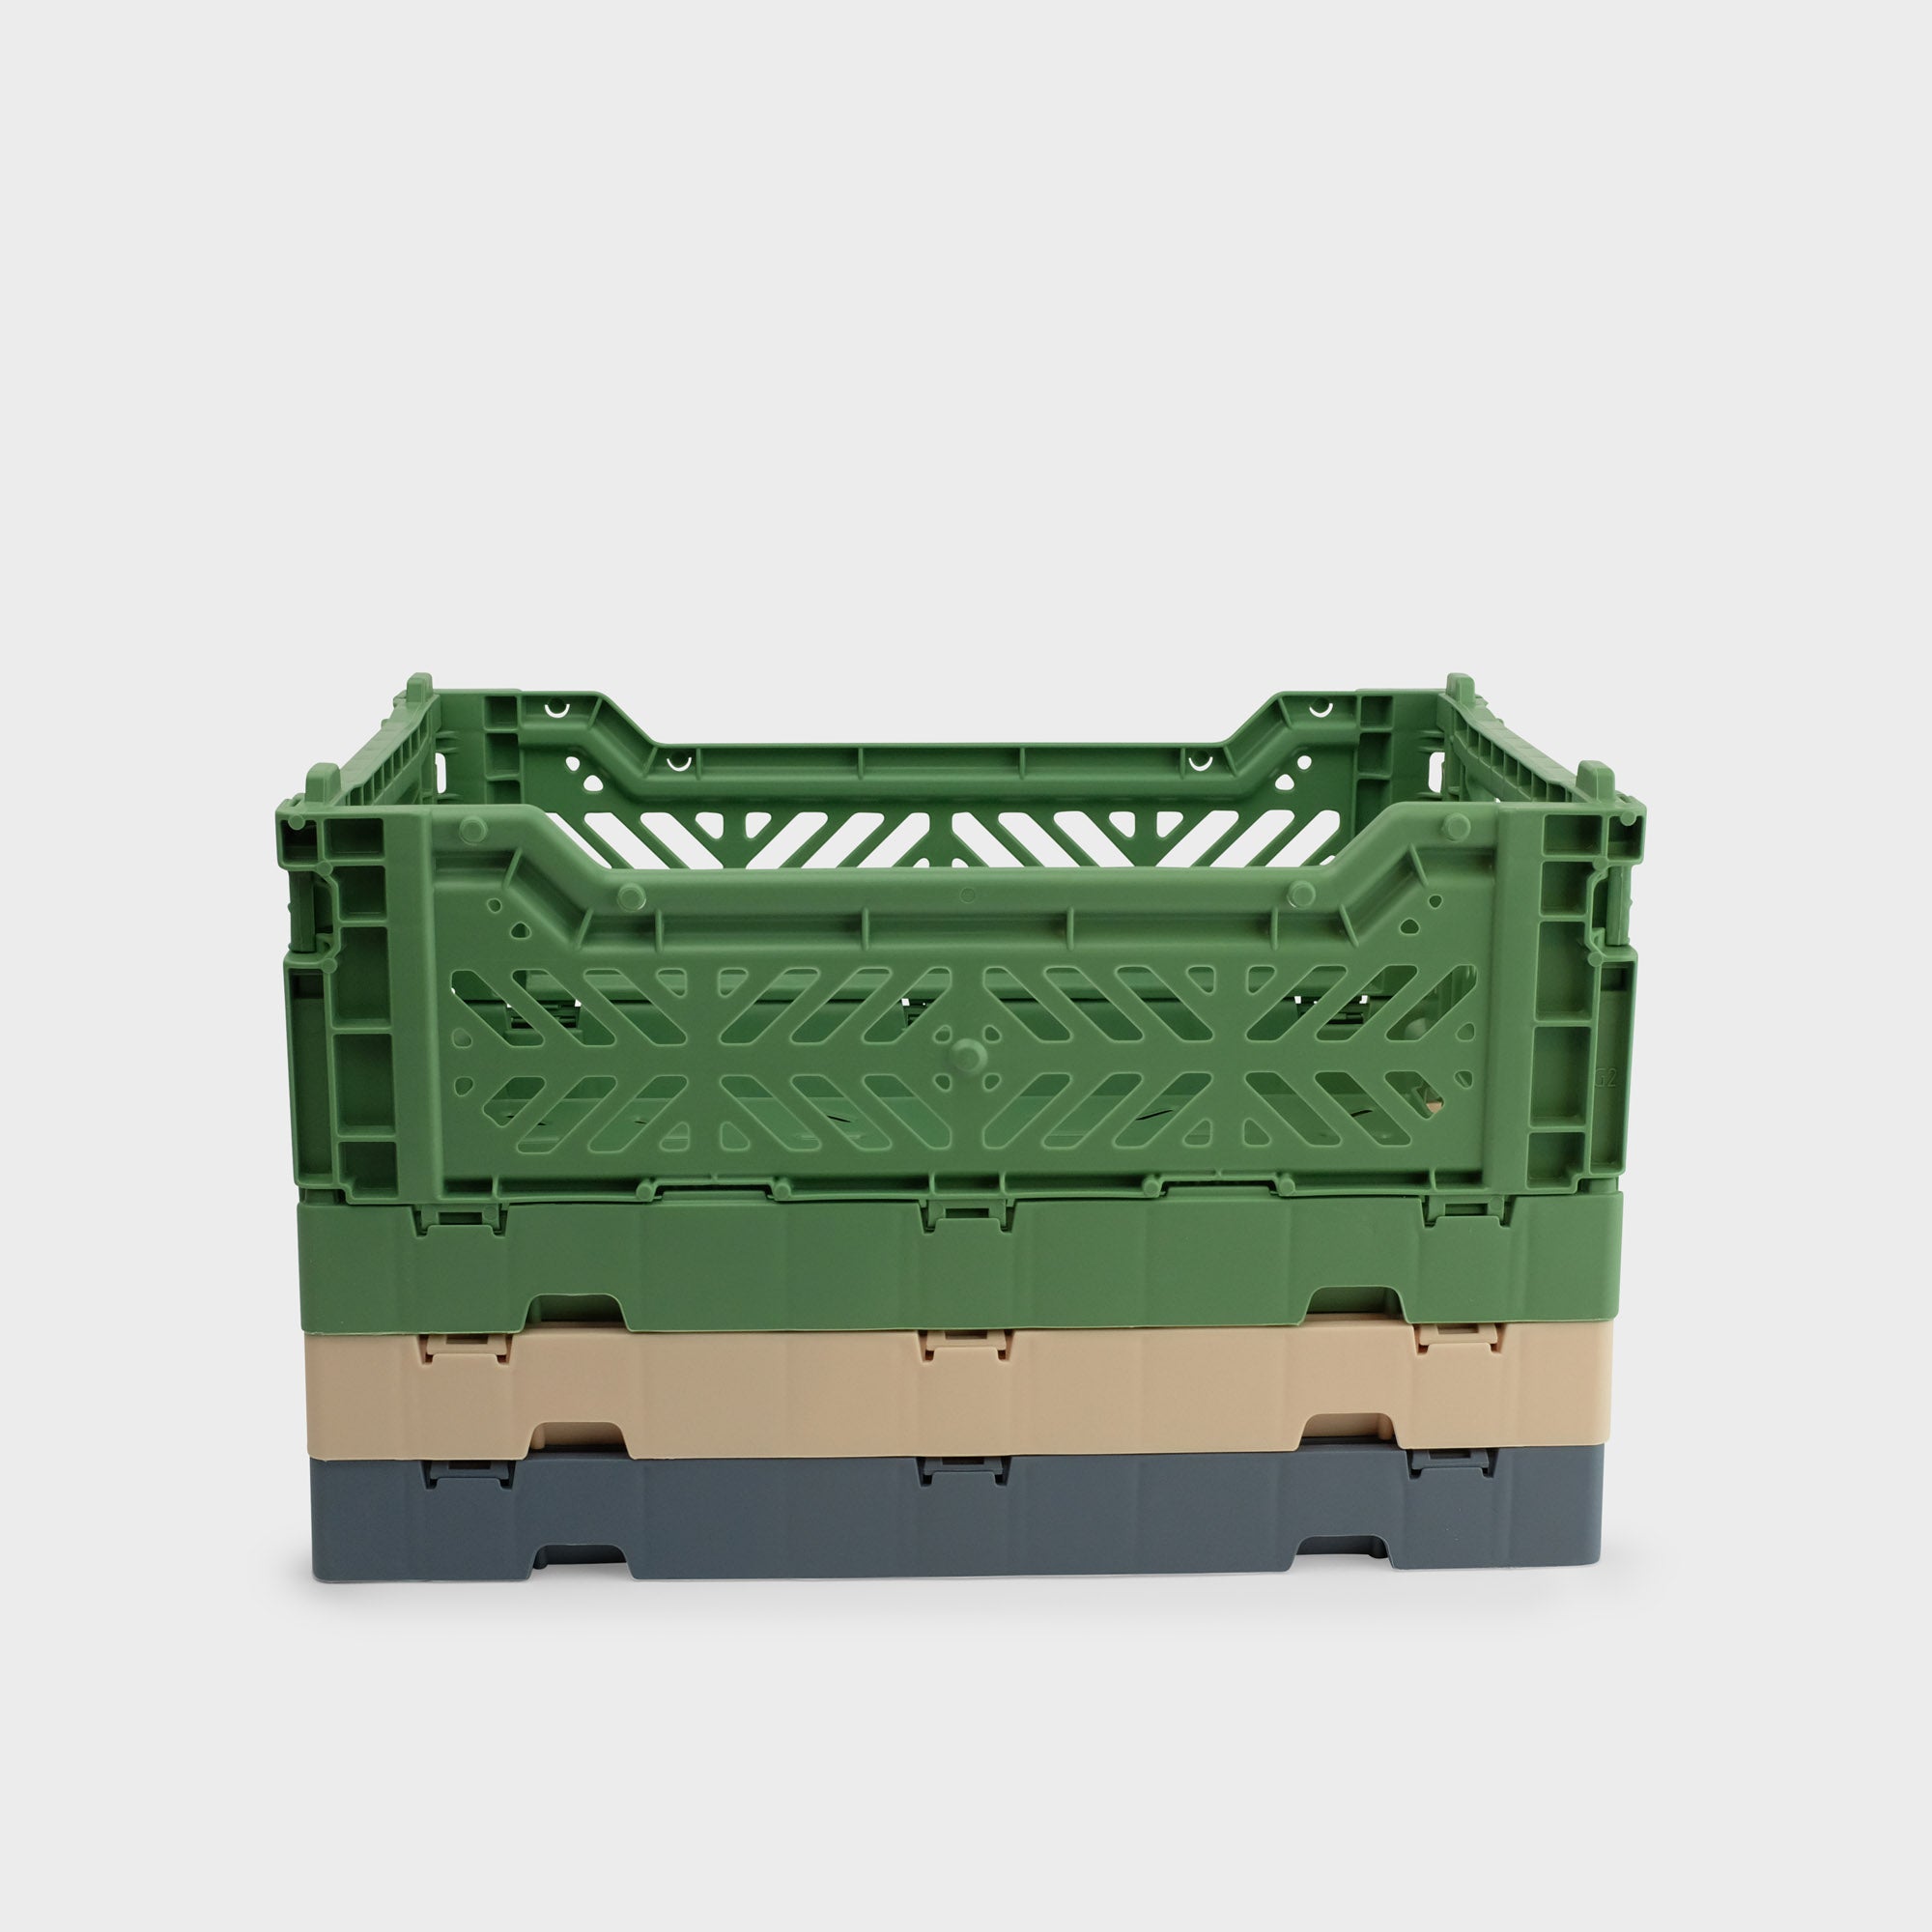 Almond Green Folding Crate (Mini) - Shrimp's House